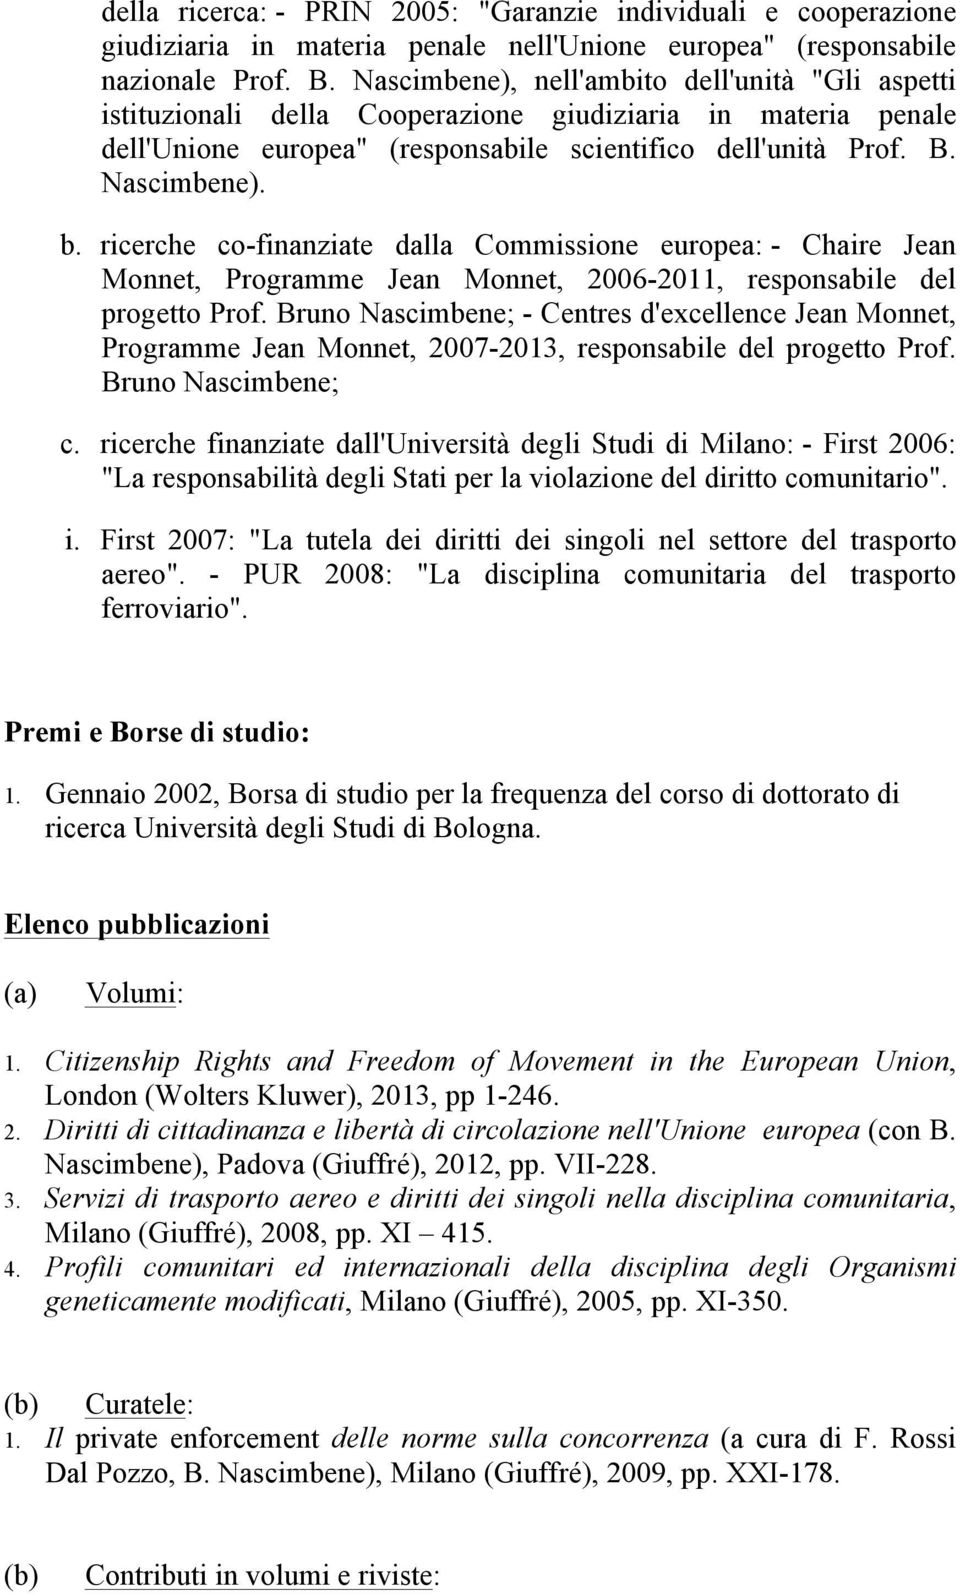 ricerche co-finanziate dalla Commissione europea: - Chaire Jean Monnet, Programme Jean Monnet, 2006-2011, responsabile del progetto Prof.